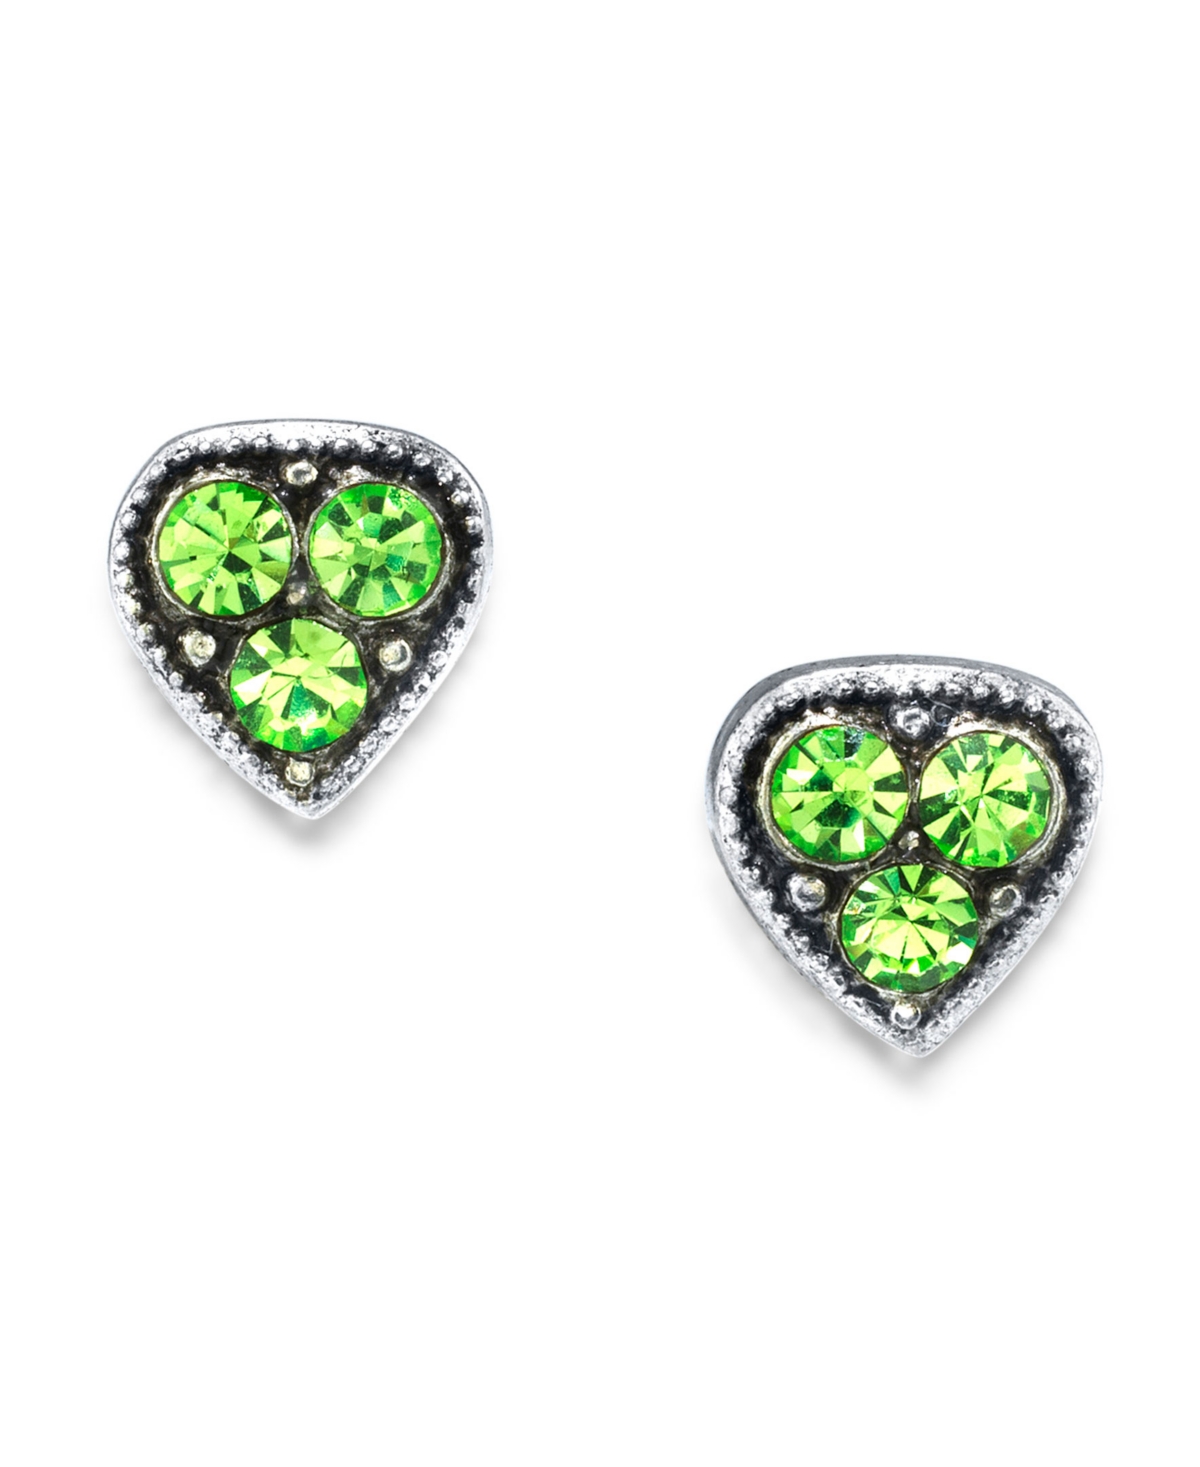 2028 Silver Tone Crystal Heart Stud Earrings In Green